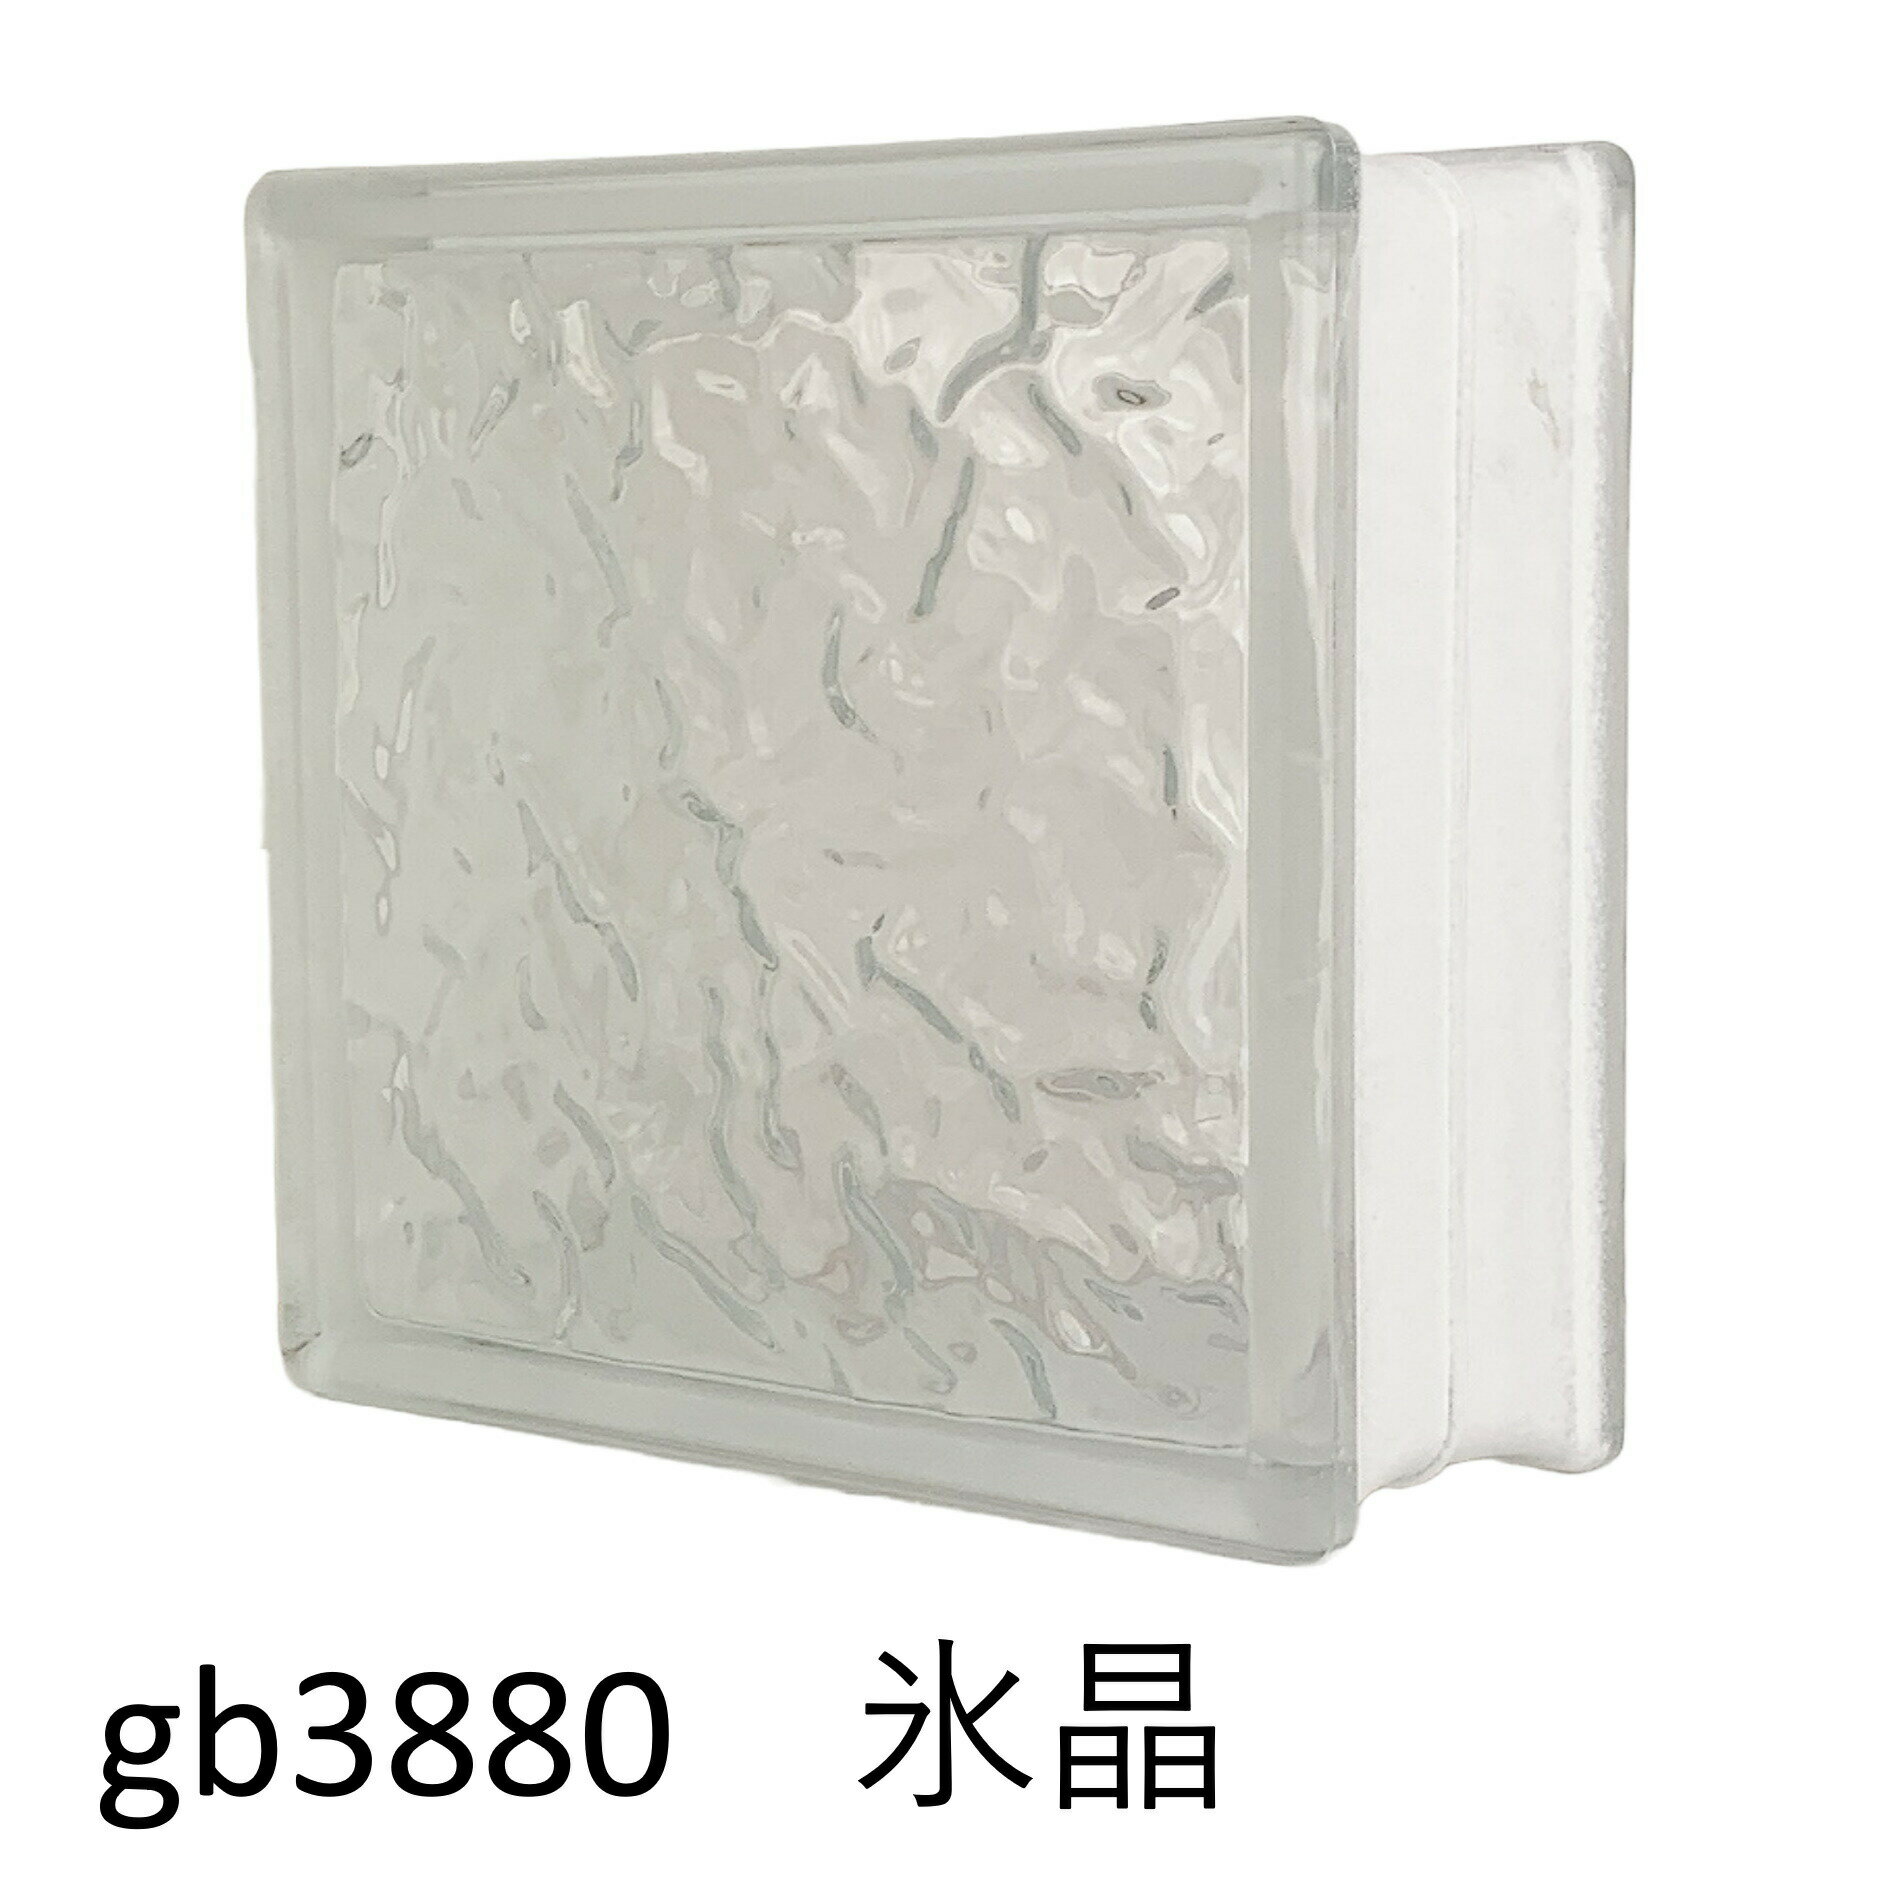 ガラスブロック 世界で有名なブランド品 厚み80mmクリア色氷晶gb3880